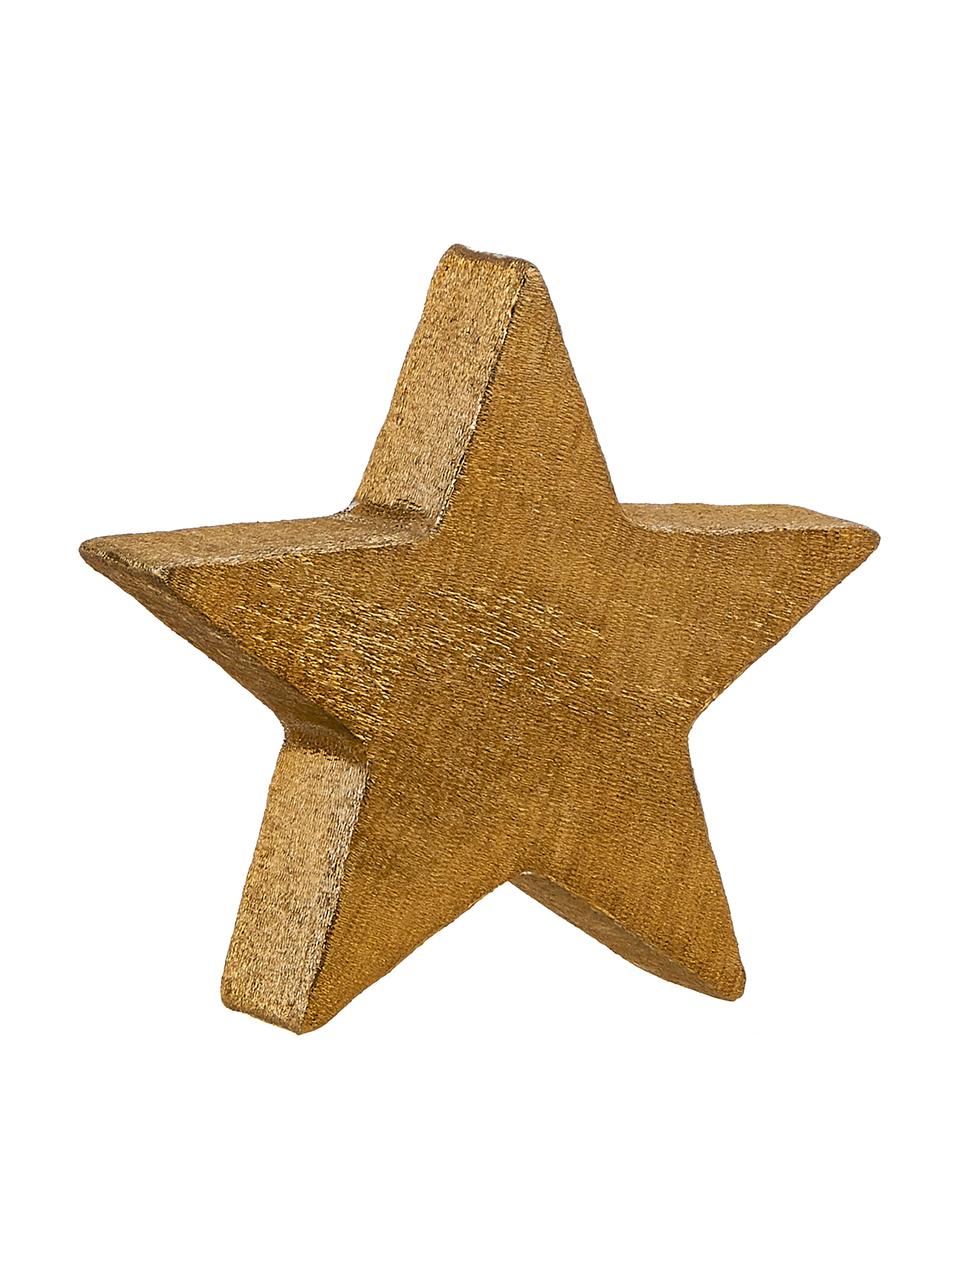 Dekoracja Mace-Star, Aluminium powlekane, Odcienie złotego, S 15 x W 15 cm